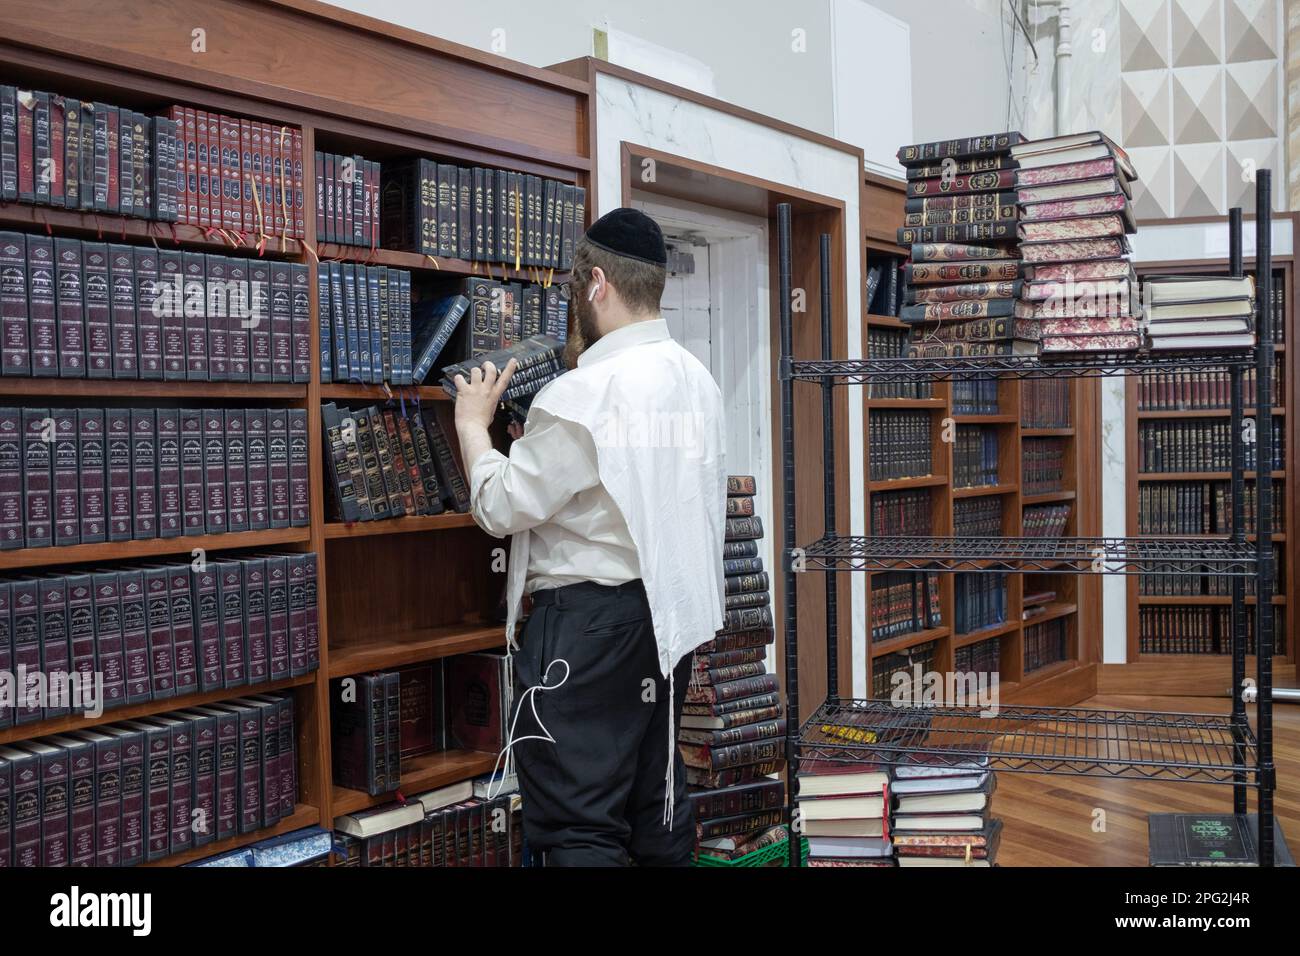 Un sexton dans une synagogue supprime des volumes d'Exode et ajoute des volumes de Lévitique afin que les fidèles puissent suivre les lectures de Torah. À New York. Banque D'Images